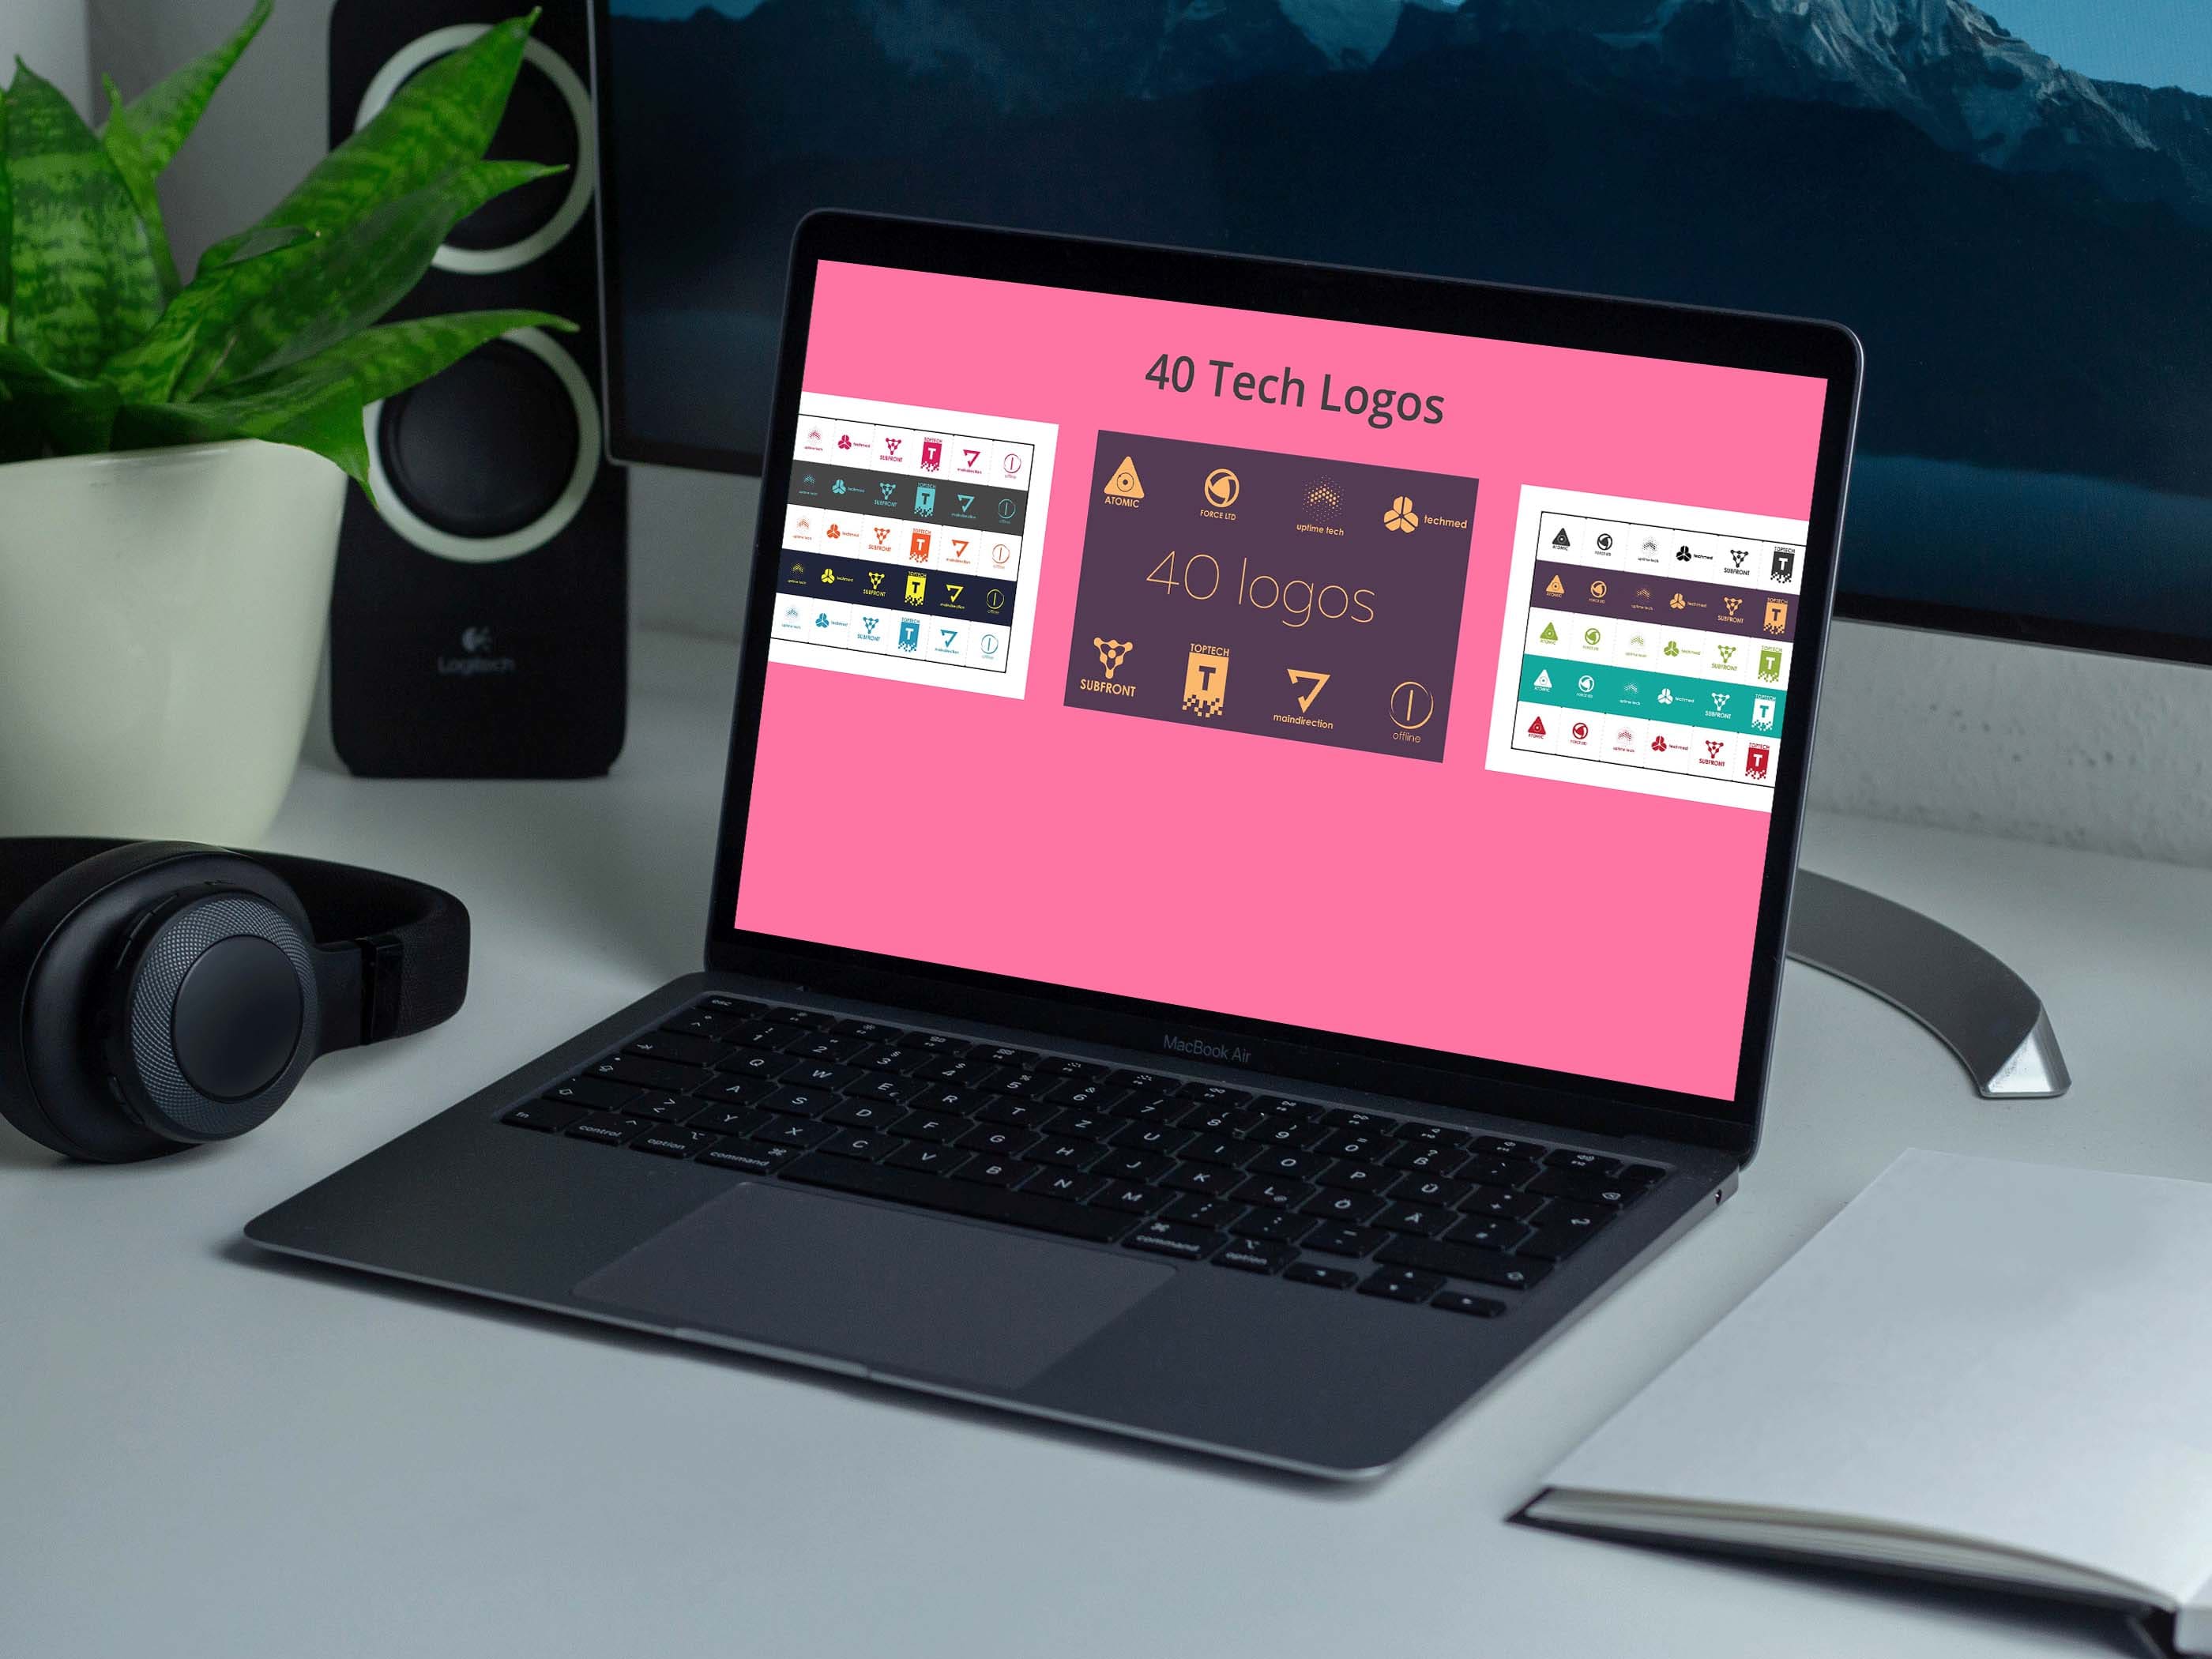 40 tech logos laptop preview.